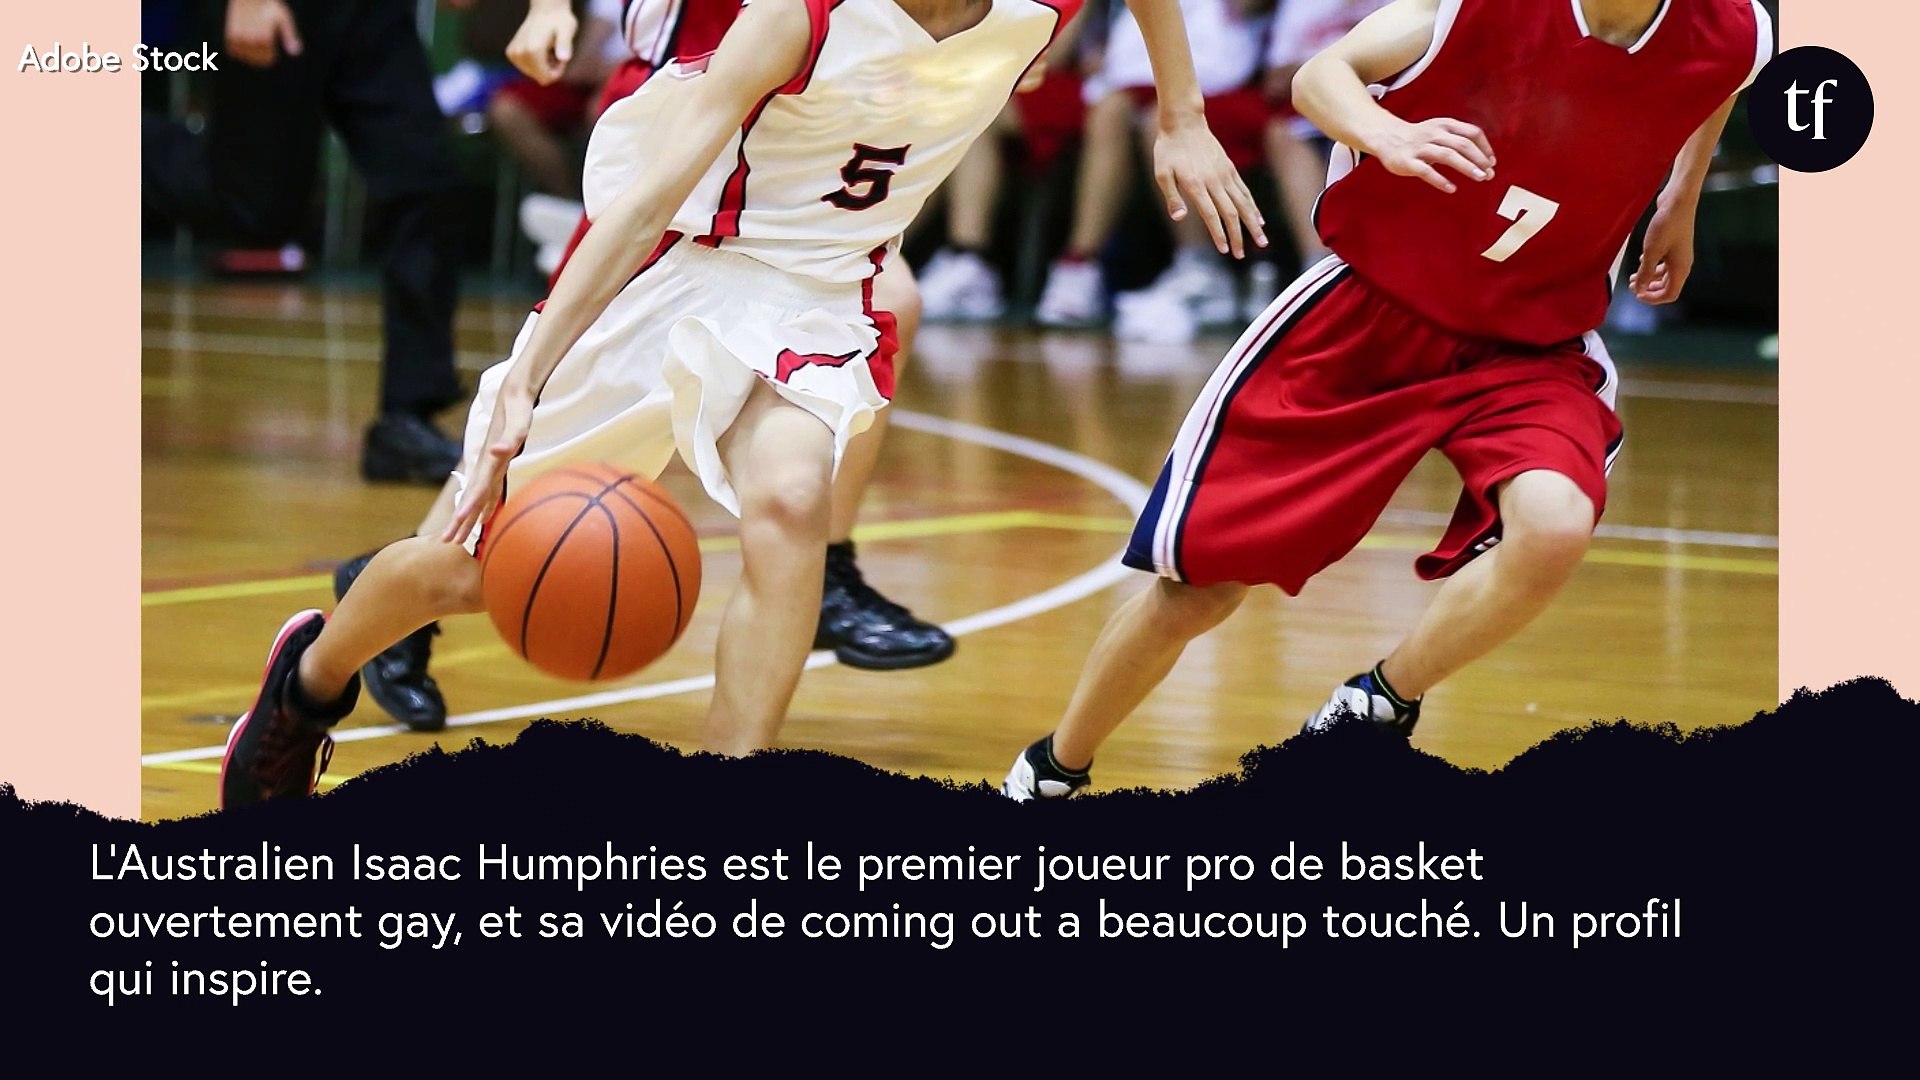 Le joueur de basket Isaac Humphries fait son coming out et sa vidéo émeut  la planète - Vidéo Dailymotion